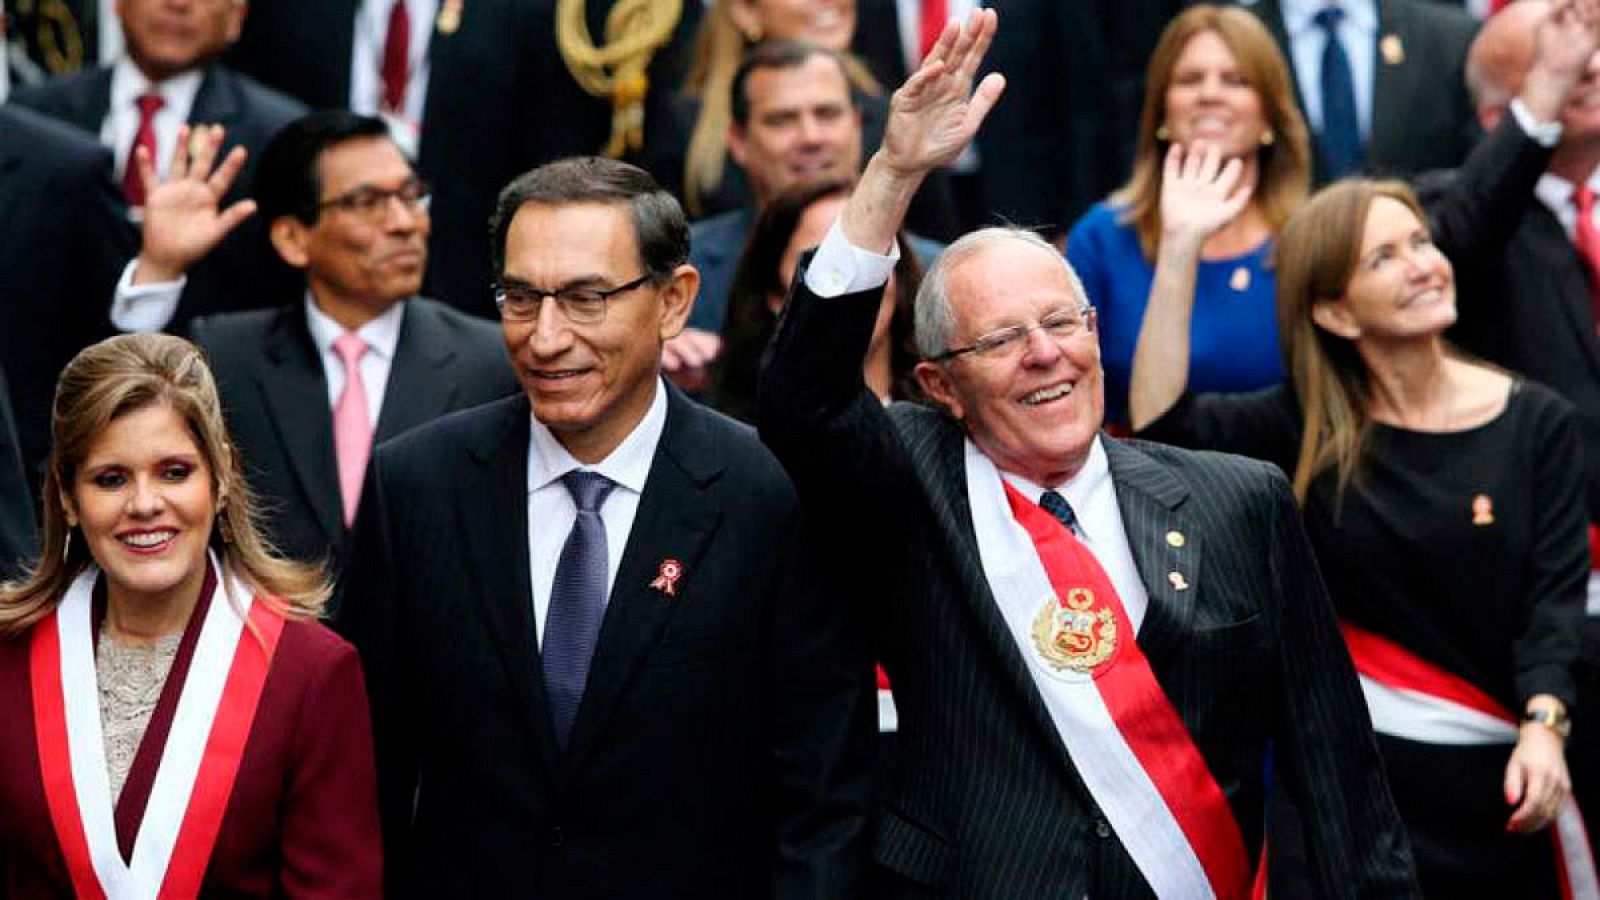 Perú Kuczynski: El Congreso de Perú debatirá si destituye al presidente Kuczynski por ocultar sus vínculos con Odebrecht 